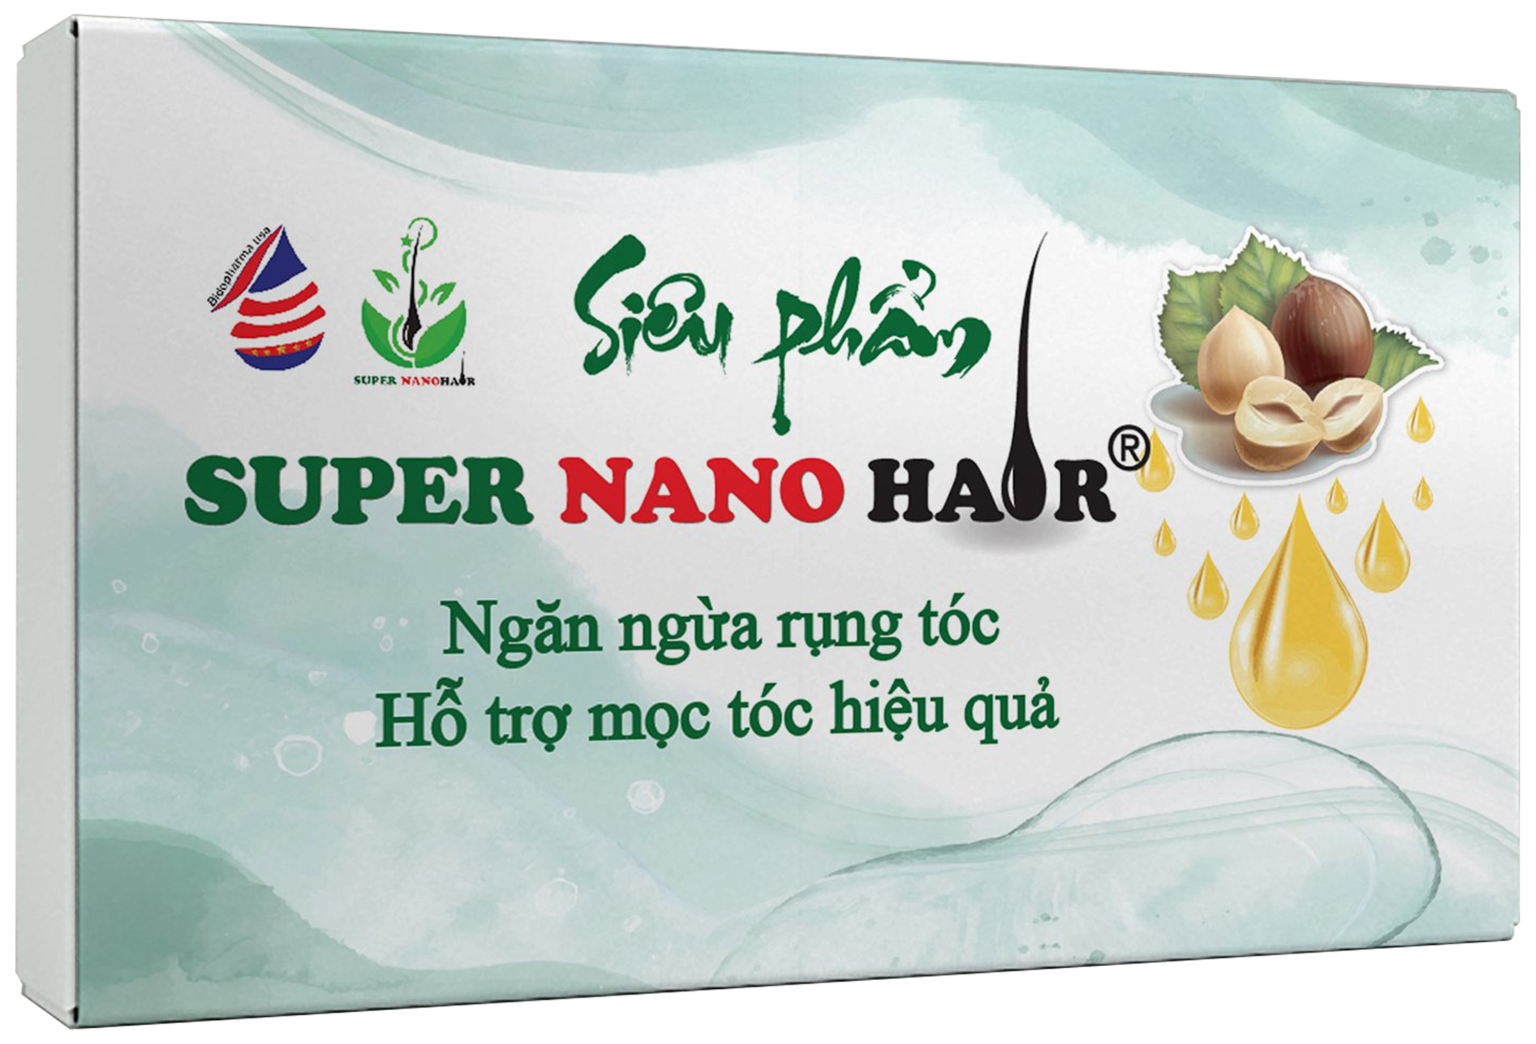  SUPER NANO HAIR - Ngăn ngừa rụng tóc và Hỗ trợ mọc tóc hiệu quả 